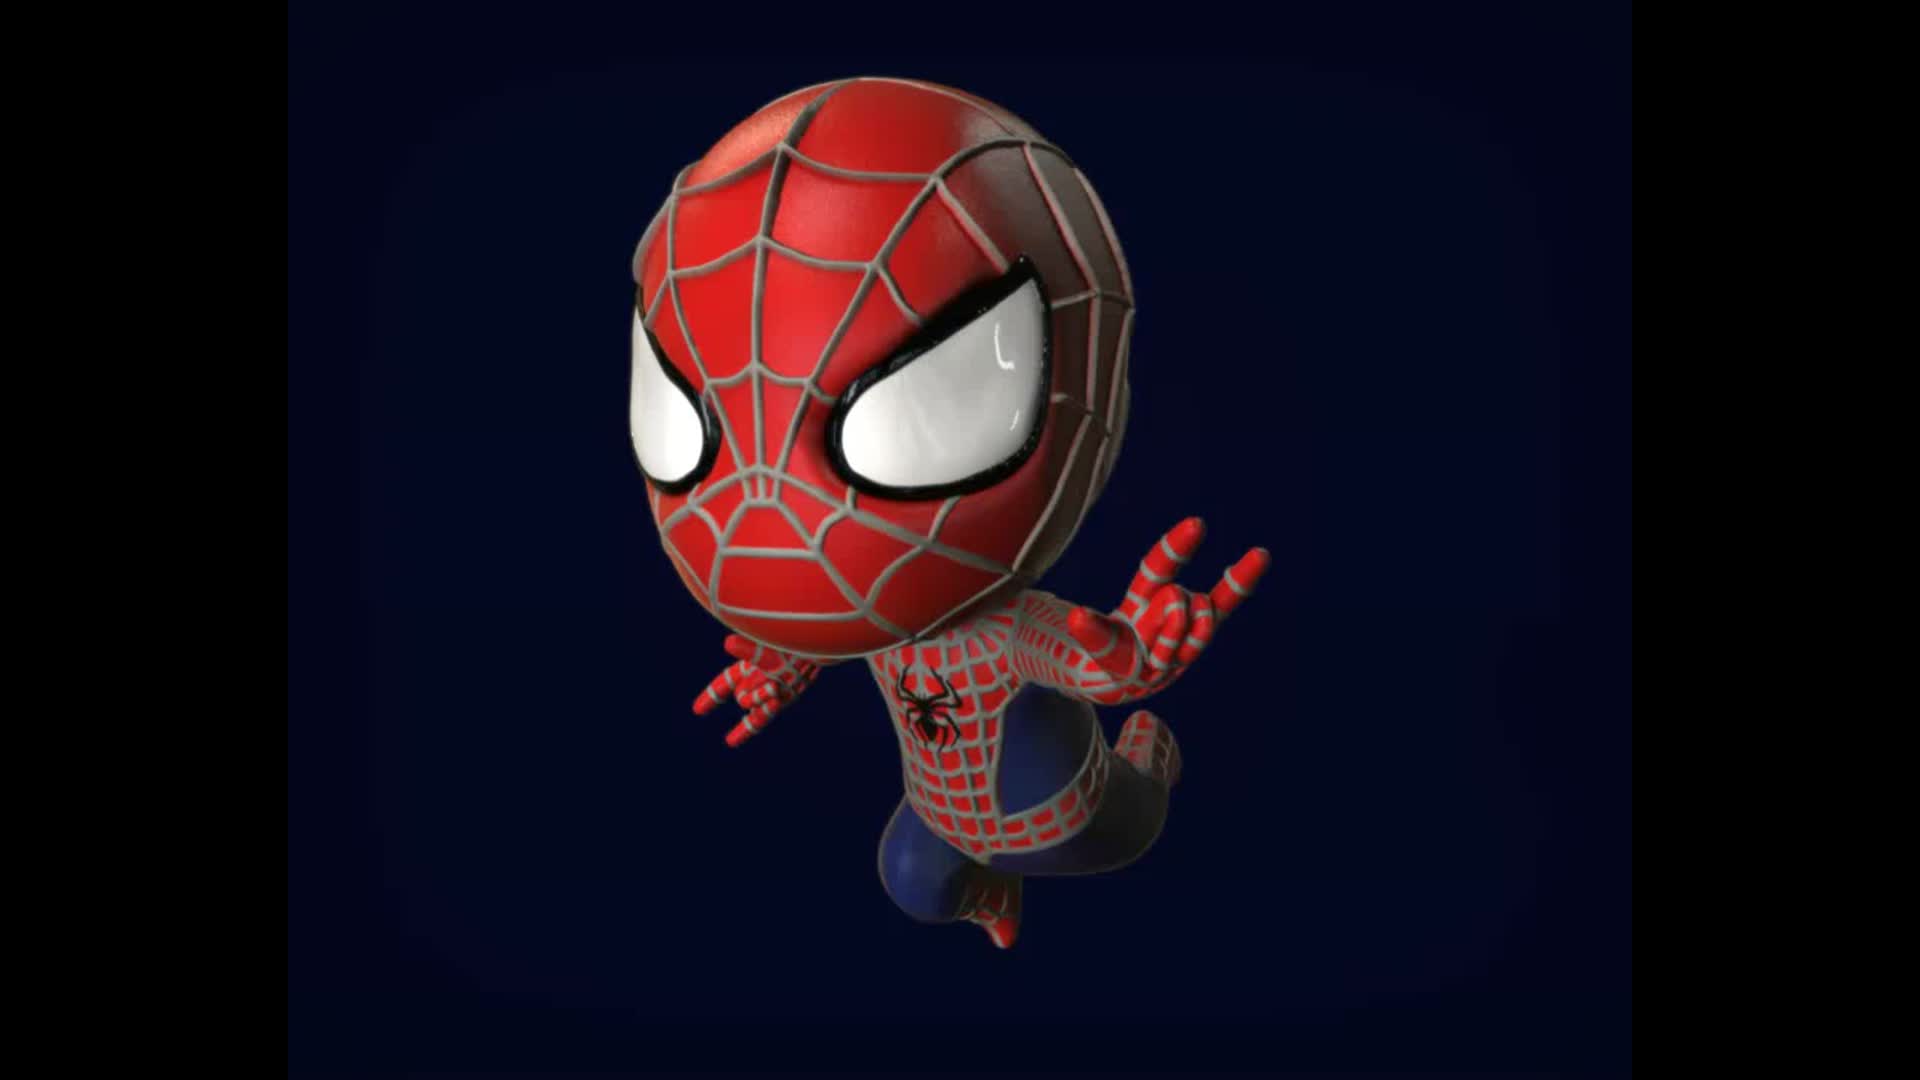 Spider-Man Chibi là một thương hiệu đồ chơi rất được ưa chuộng trong cộng đồng yêu thích siêu anh hùng. Năm 2024, các fan hâm mộ sẽ được thưởng thức những mẫu đồ chơi mới và độc đáo với thiết kế chibi độc đáo, tạo cảm giác xinh xắn và đáng yêu cho những người chơi. Bên cạnh đó, các sản phẩm đều được làm từ chất liệu an toàn, đảm bảo sự yên tâm cho các bậc phụ huynh khi mua cho con em mình. Một tựa game mới liên quan đến Spider-Man Chibi cũng sẽ được phát hành, mang đến những giờ phút giải trí thú vị cho người chơi. 

Translation: Spider-Man Chibi is a very popular toy brand in the superhero community. In 2024, fans will enjoy new and unique toy designs with cute chibi styles. The toys give a charming and adorable feeling to players. In addition, the products are made from safe materials, ensuring peace of mind for parents when buying for their children. A new game related to Spider-Man Chibi will also be released, bringing exciting entertainment moments to players.